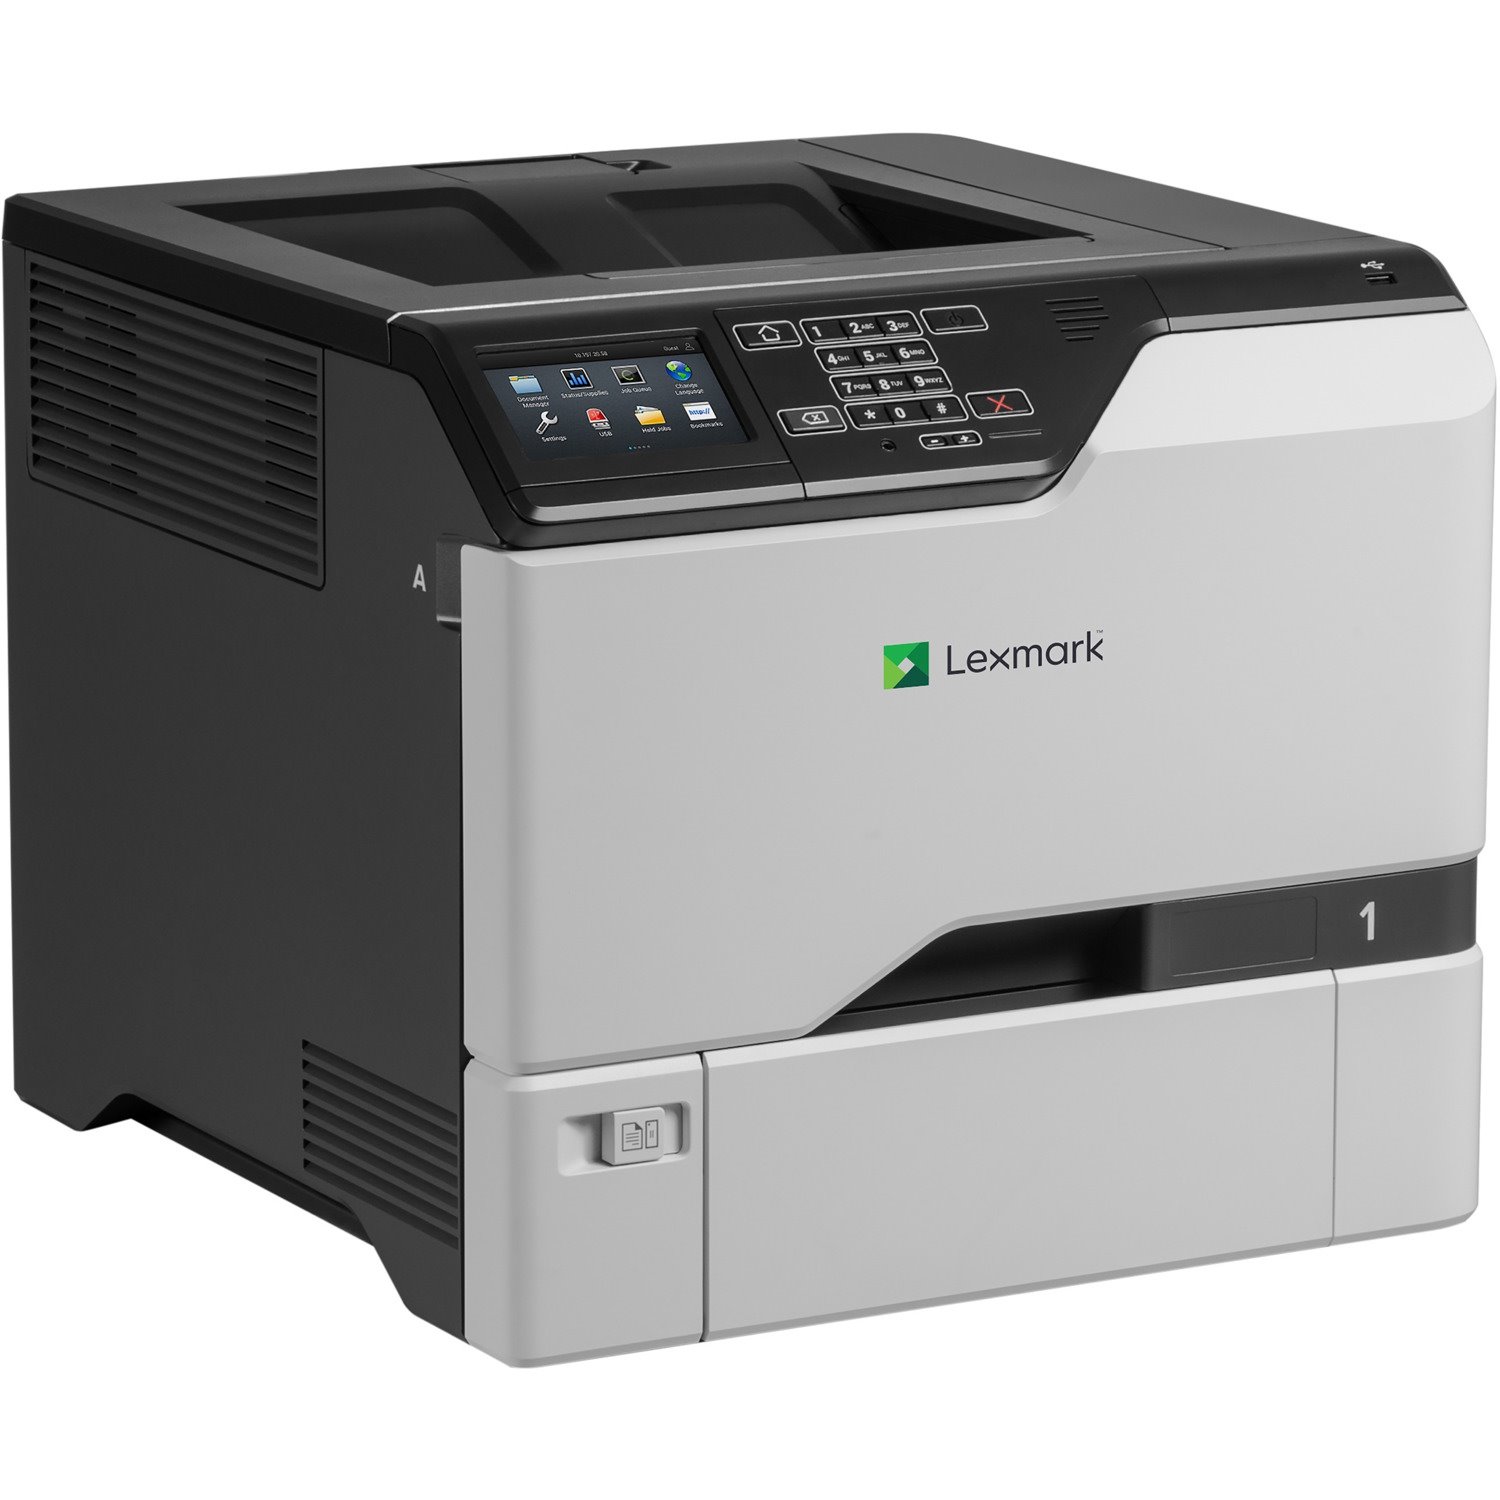 Lexmark CS725 CS725de Desktop Laser Printer - Color - TAA Compliant